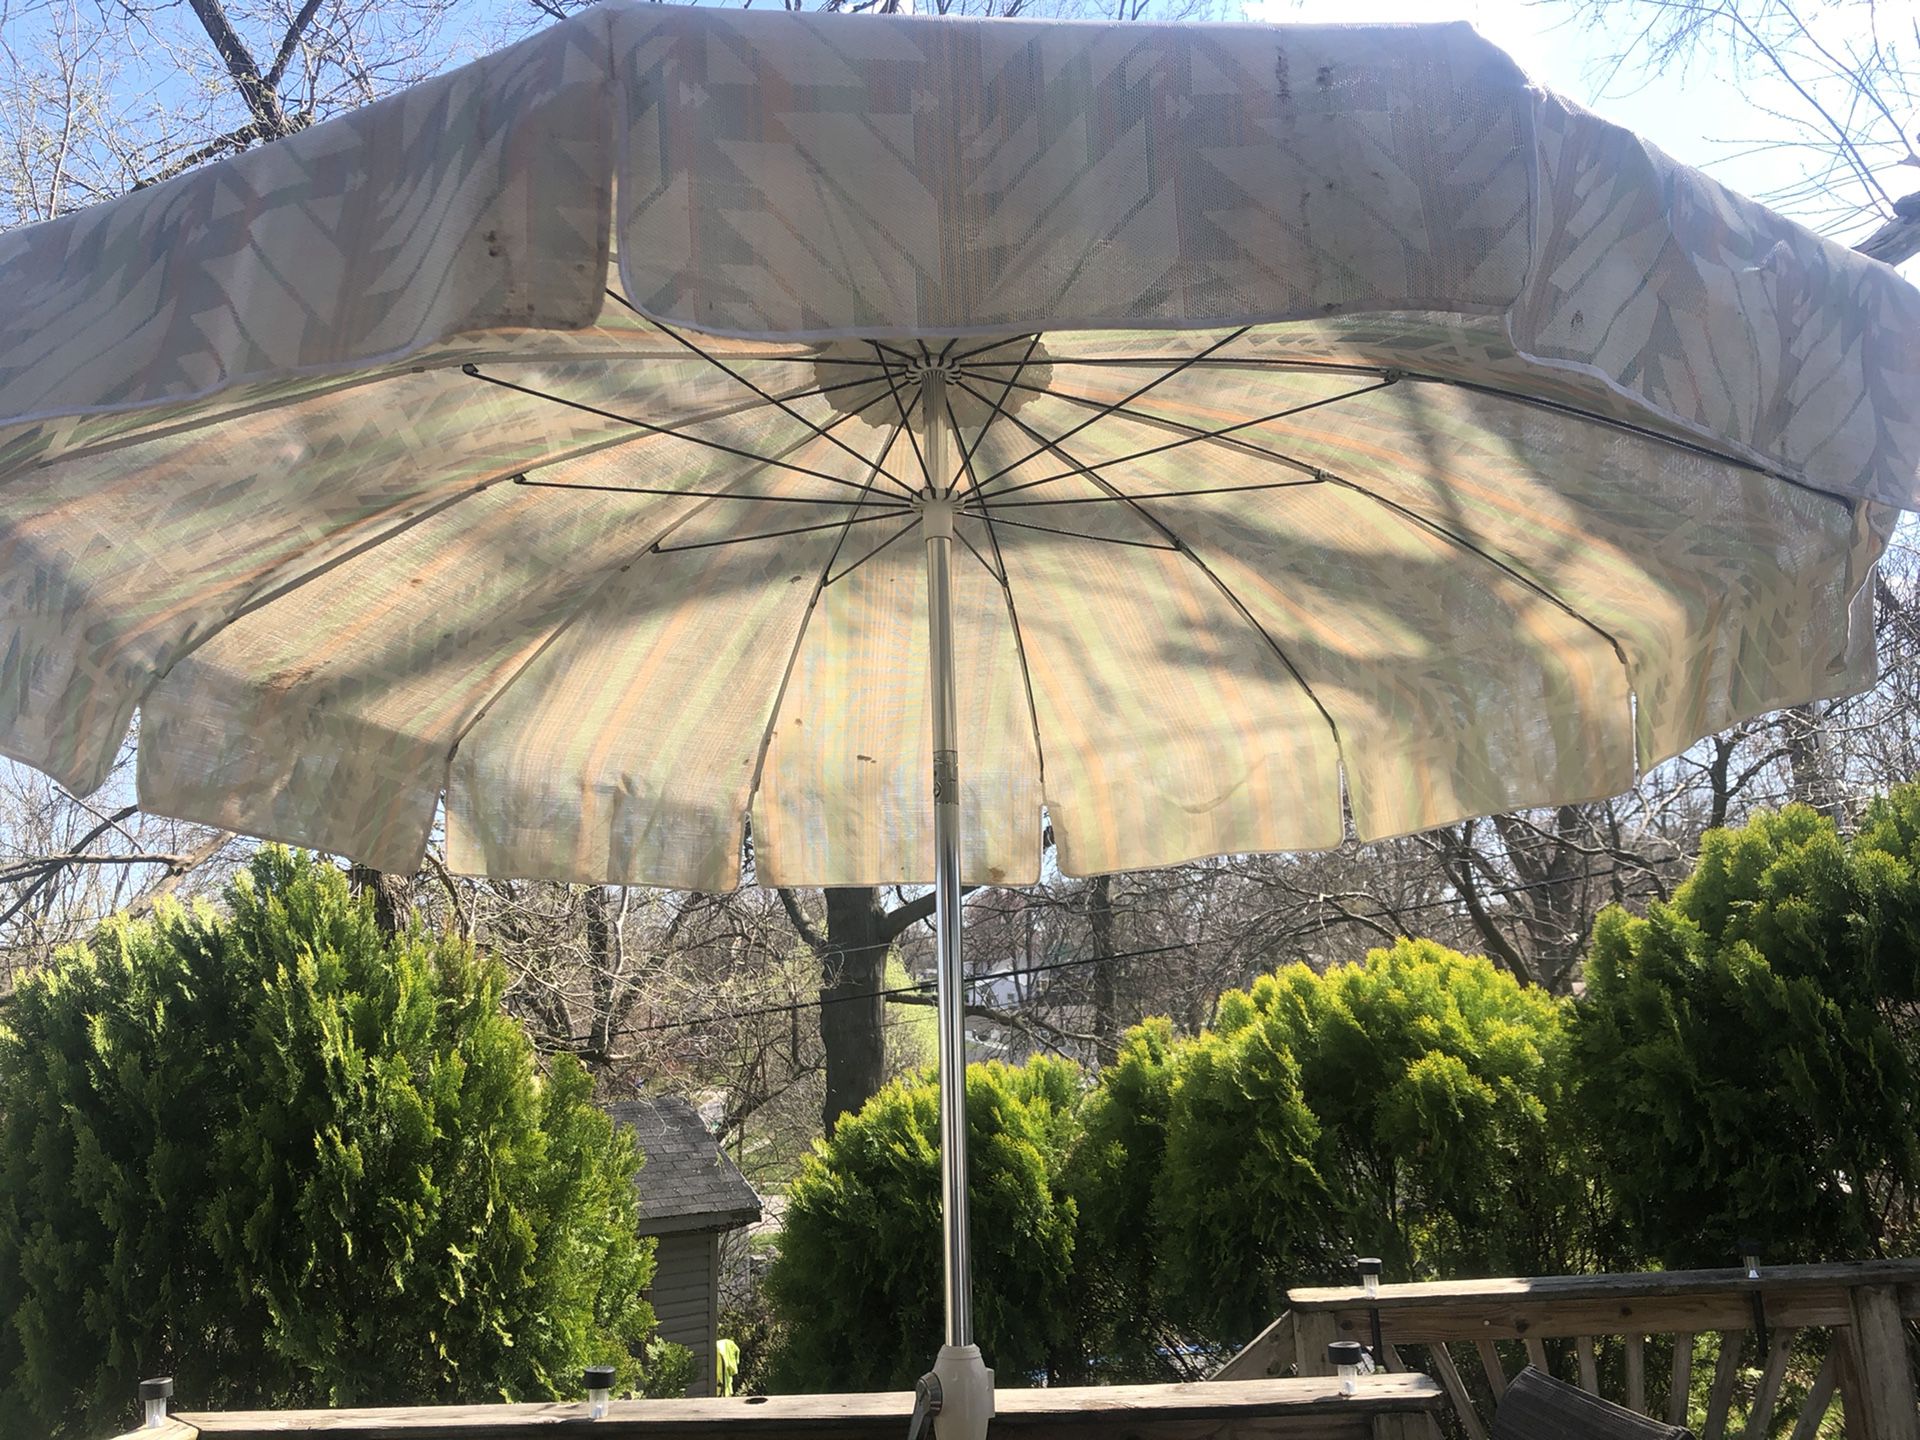 Large Patio Umbrella